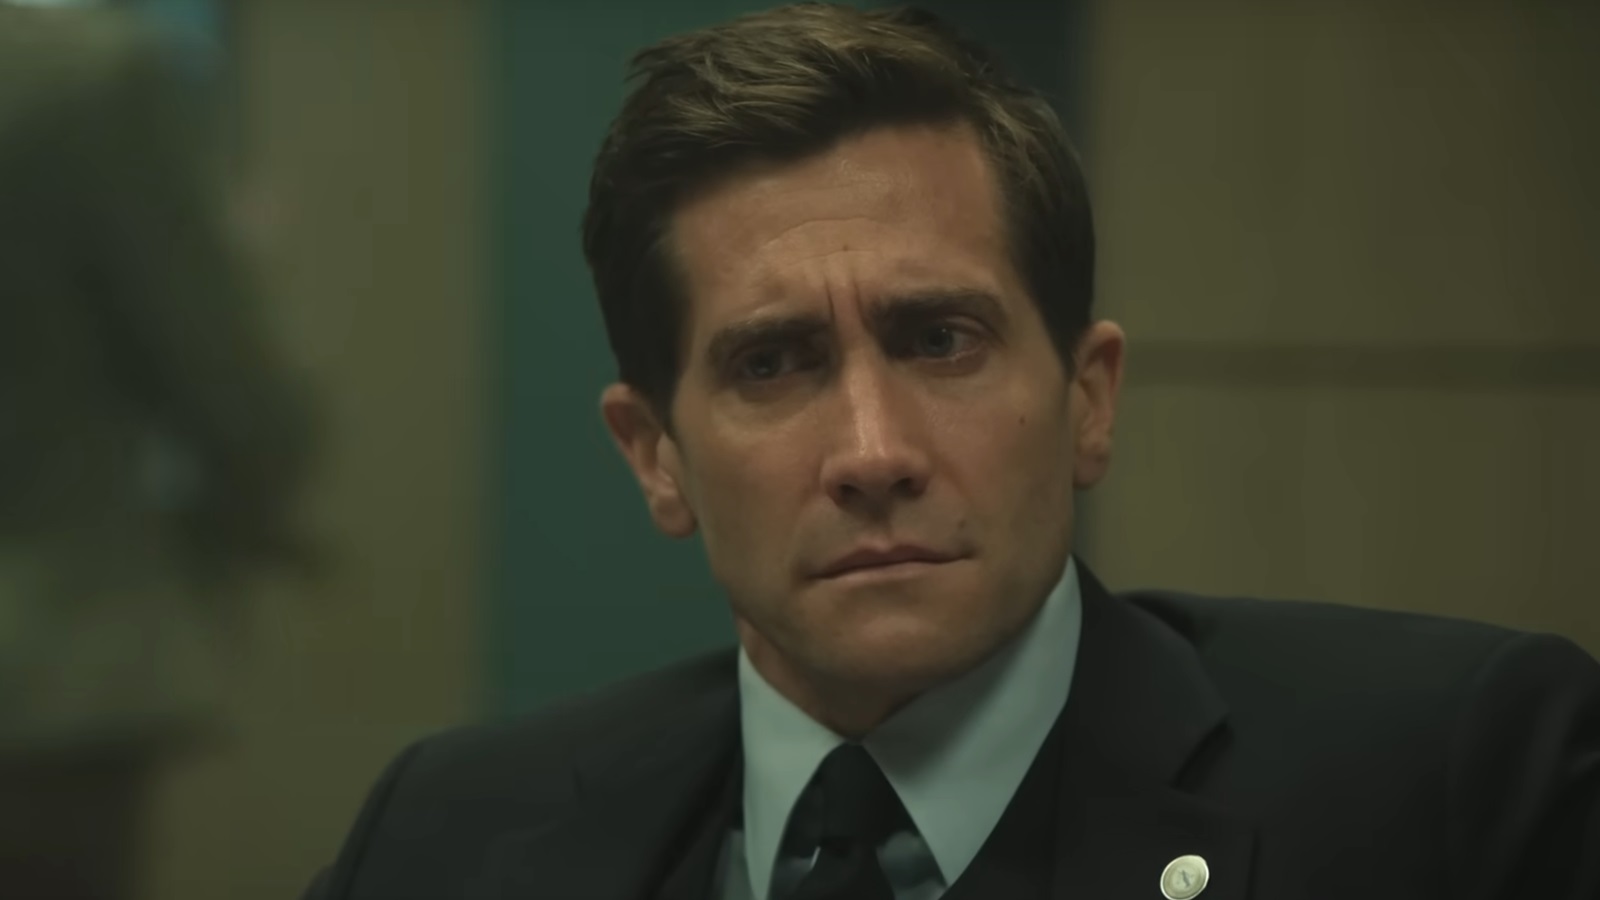 Presunto Innocente: Jake Gyllenhaal è un procuratore accusato di omicidio nel teaser della serie